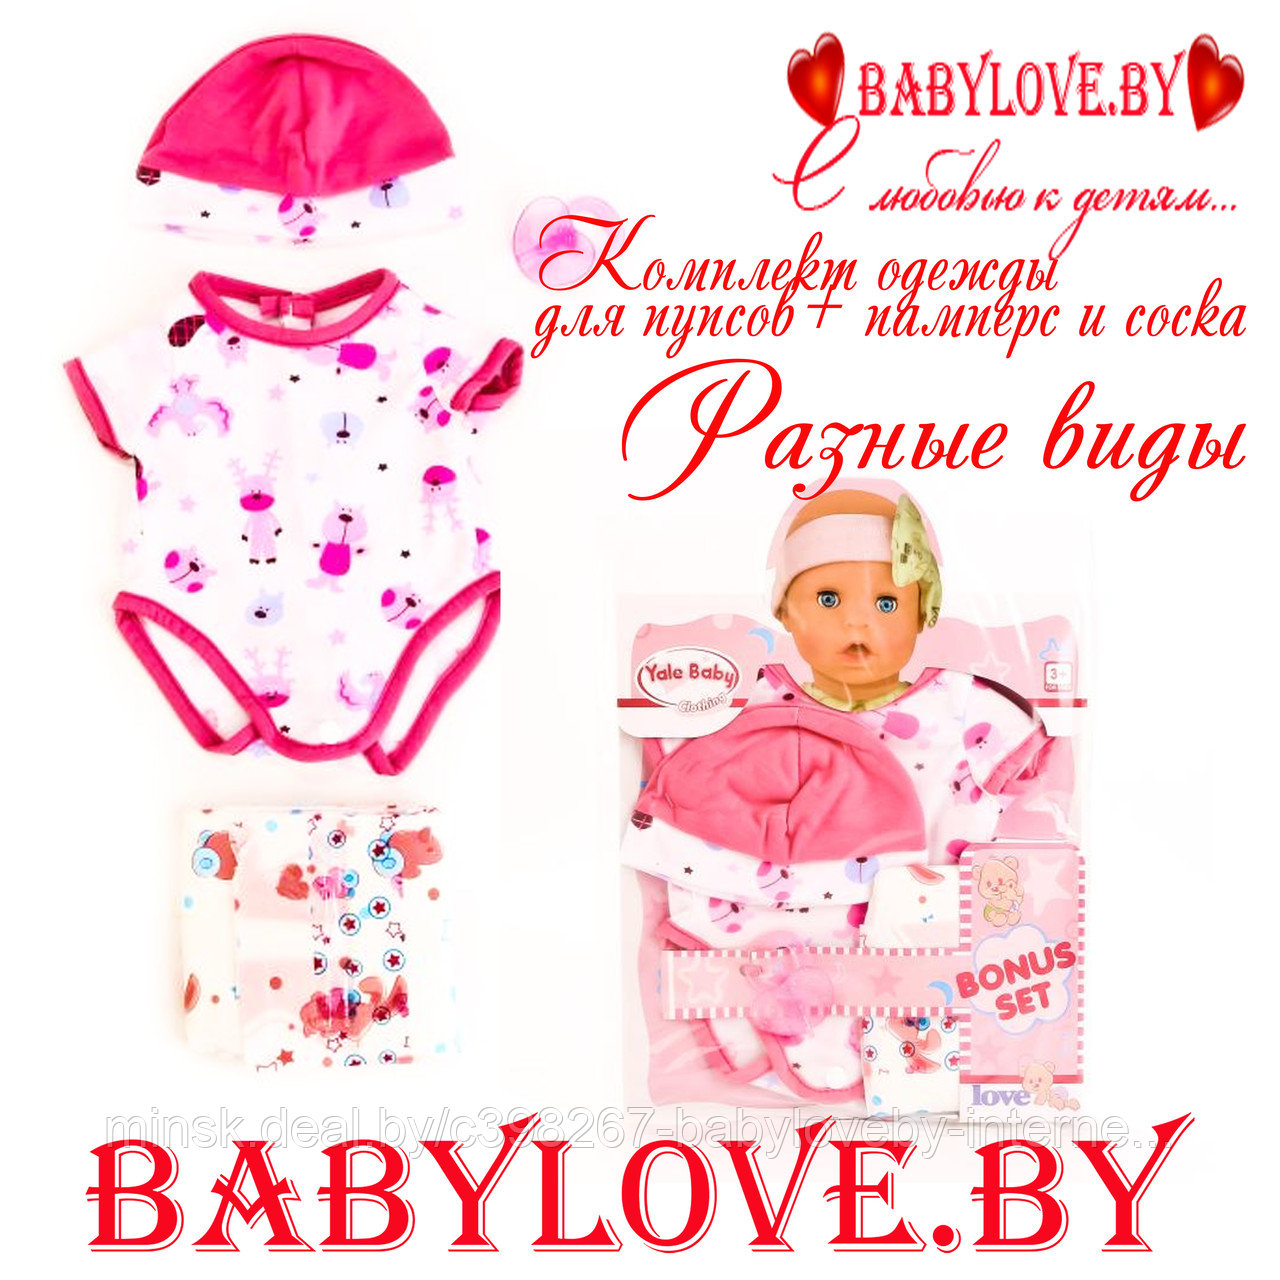 Одежда для кукол пупсов 43-45 см в ассортименте (baby doll, baby love, baby born) + памперс и соска, фото 1